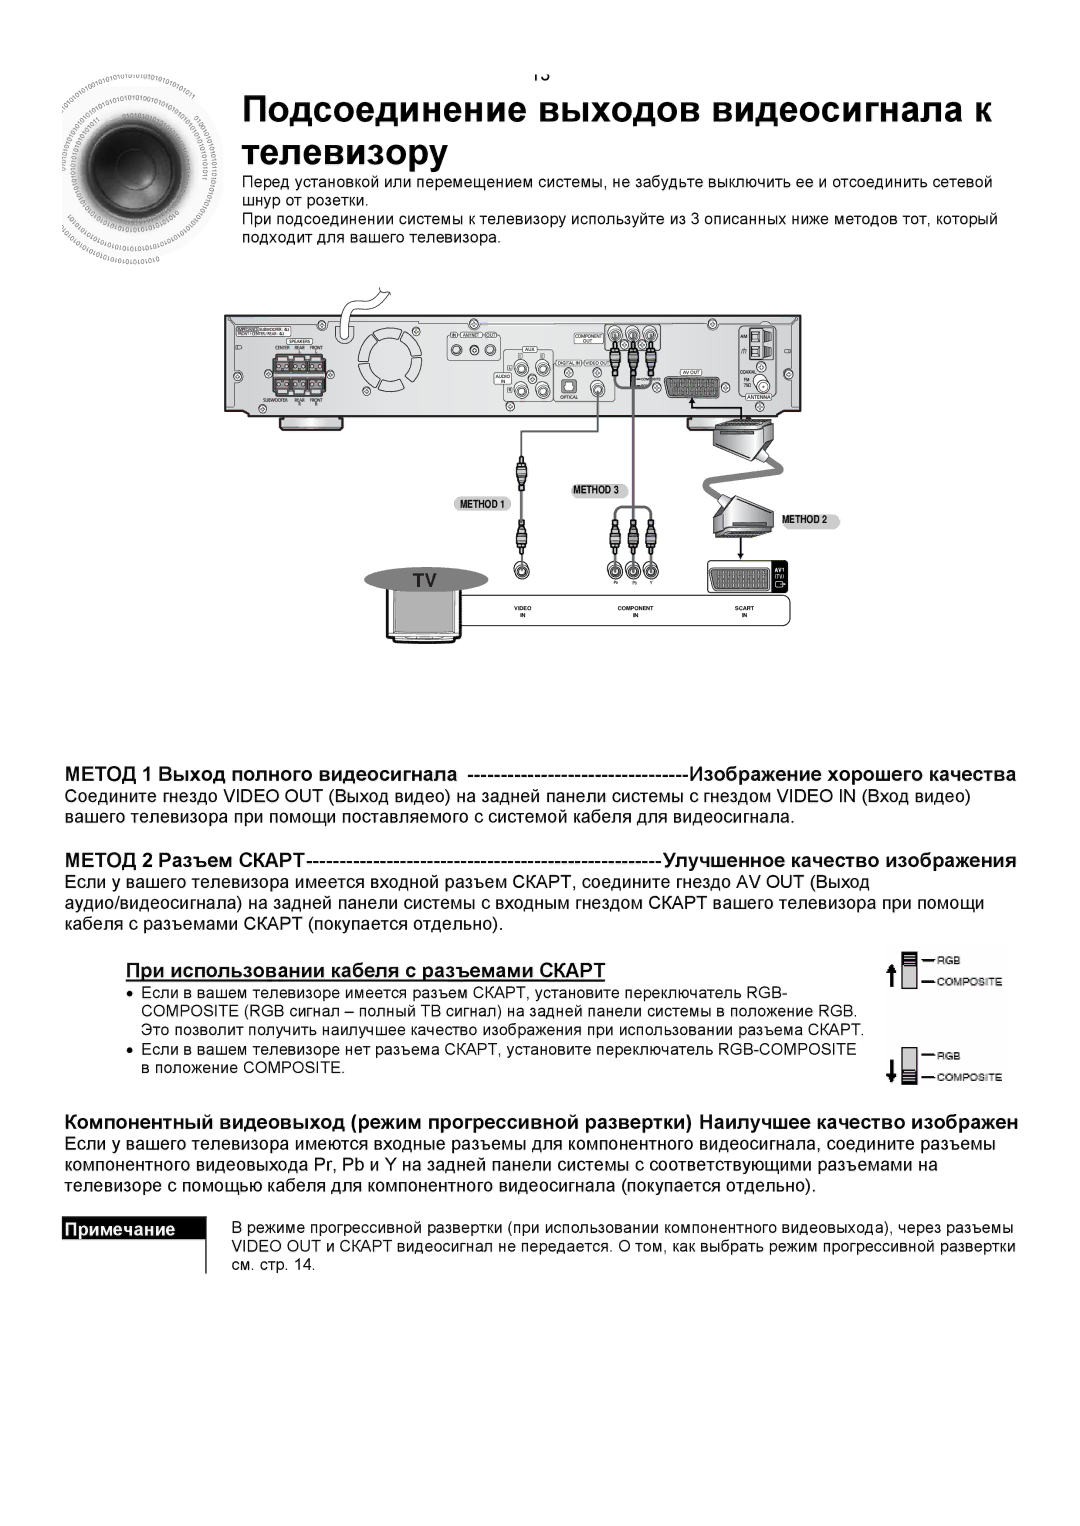 Samsung HTDS400RH/XFO manual Подсоединение выходов видеосигнала к телевизору, При использовании кабеля с разъемами Скарт 